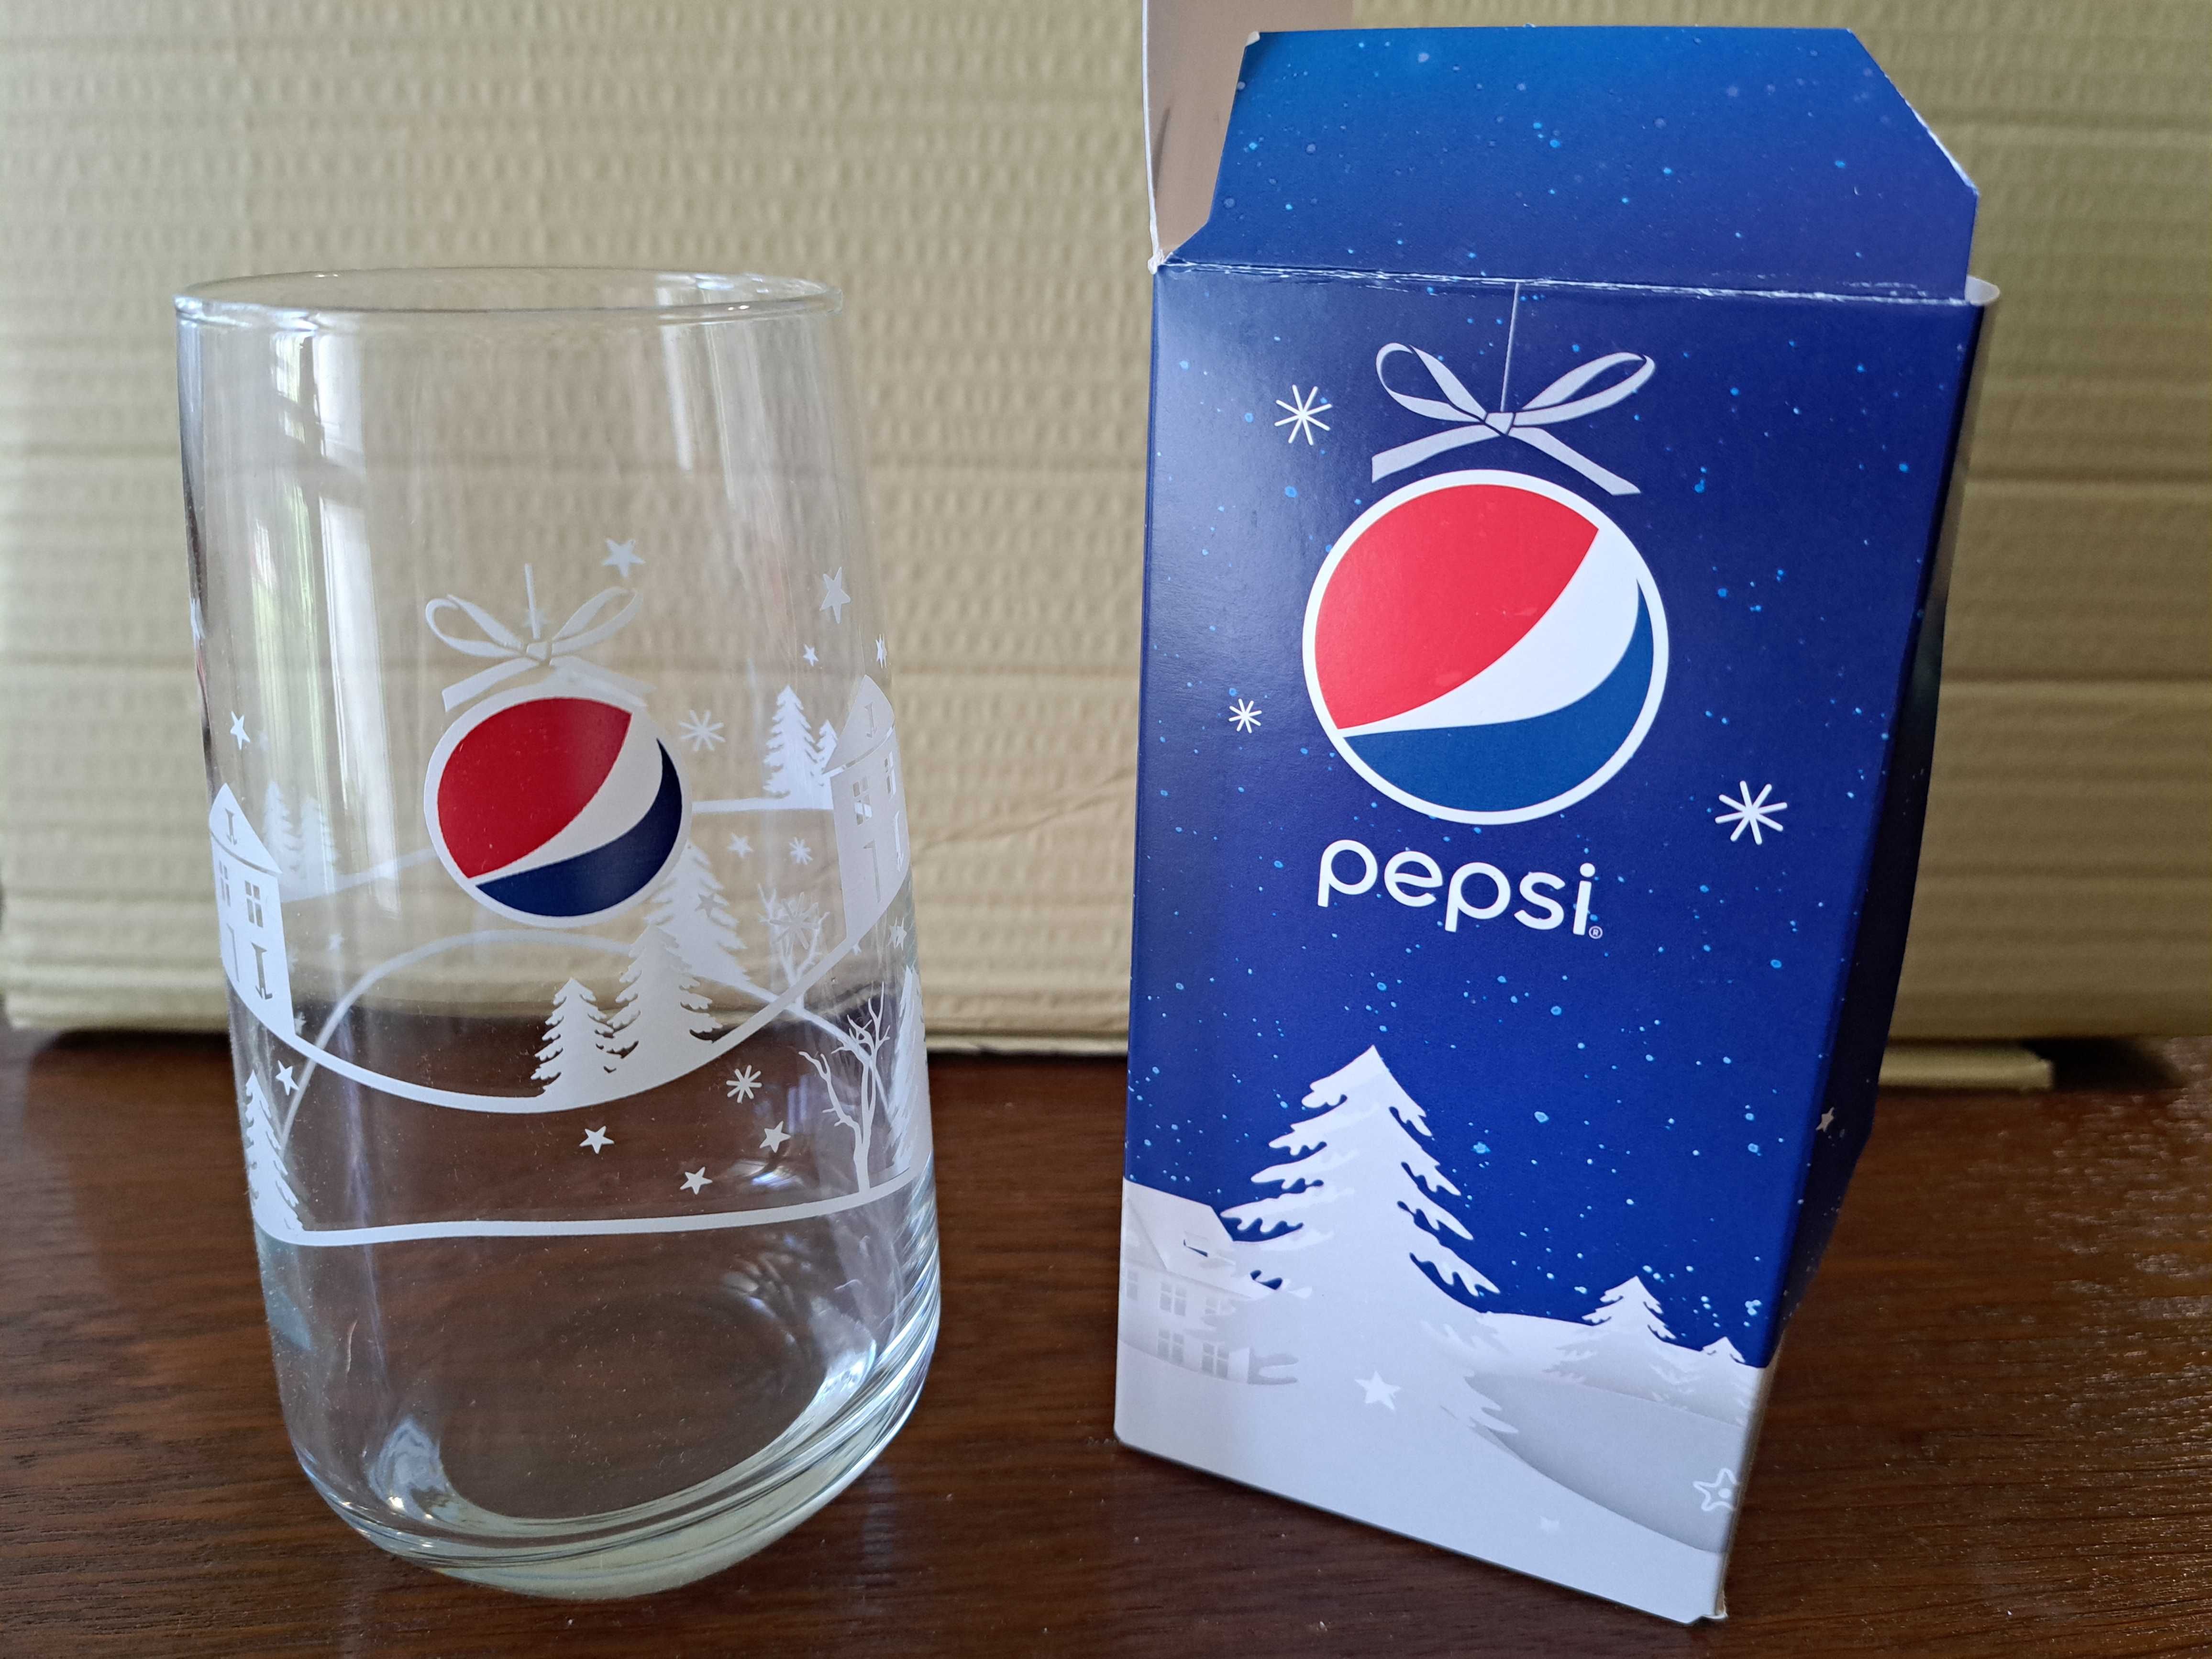 Pepsi Szklanka (Kolekcja Świąteczna, Zima) - NOWA!